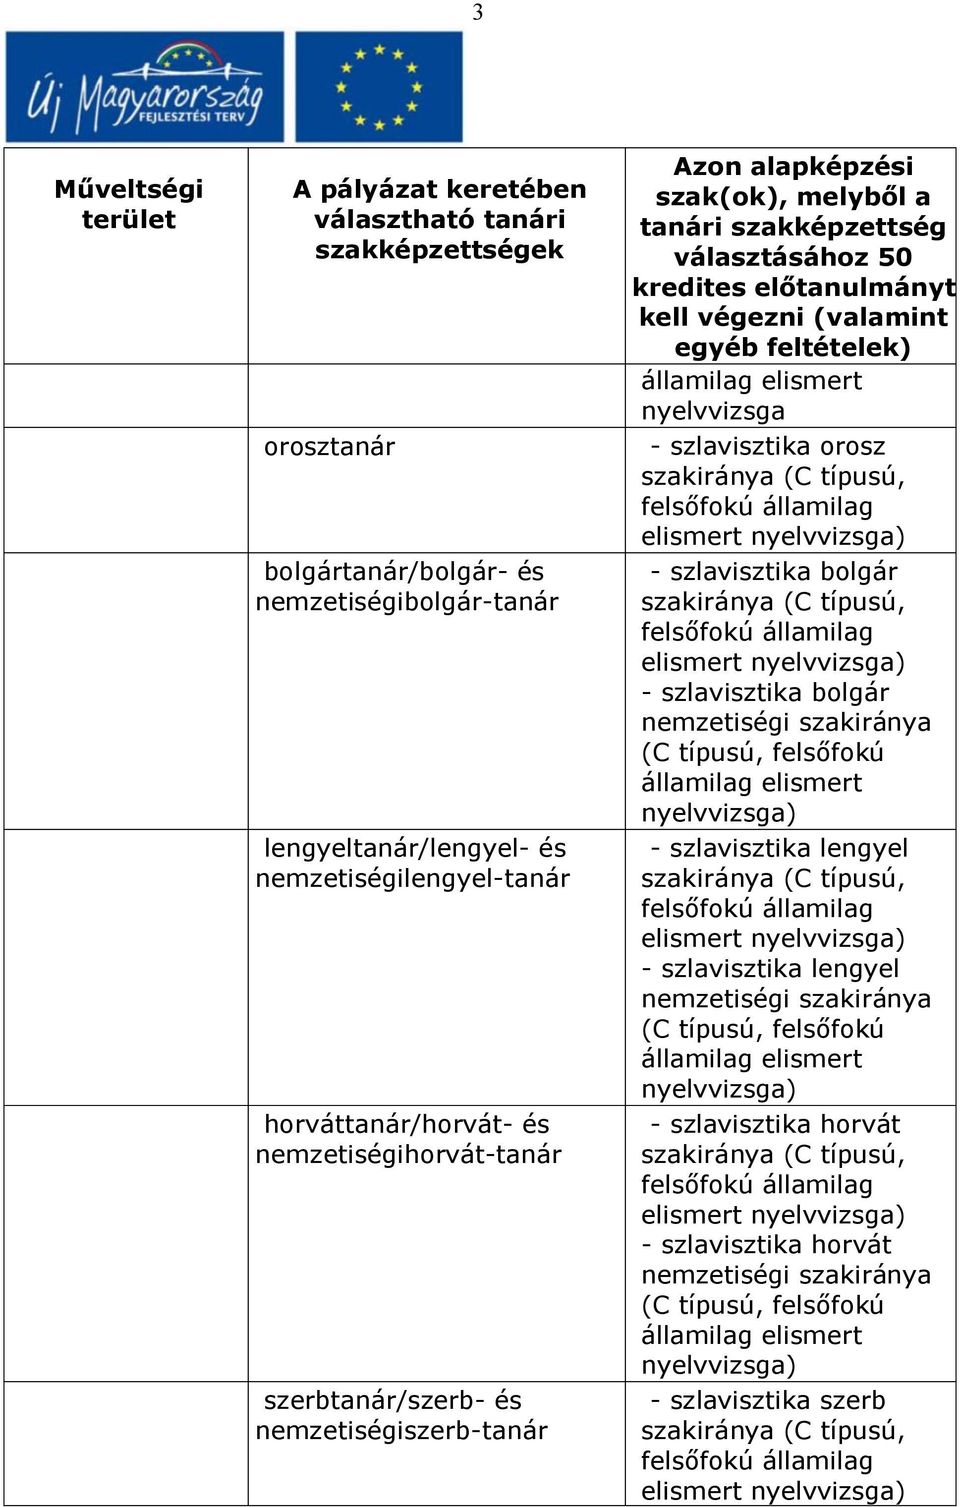 bolgár nemzetiségi szakiránya (C típusú, felsőfokú államilag elismert nyelvvizsga) - szlavisztika lengyel - szlavisztika lengyel nemzetiségi szakiránya (C